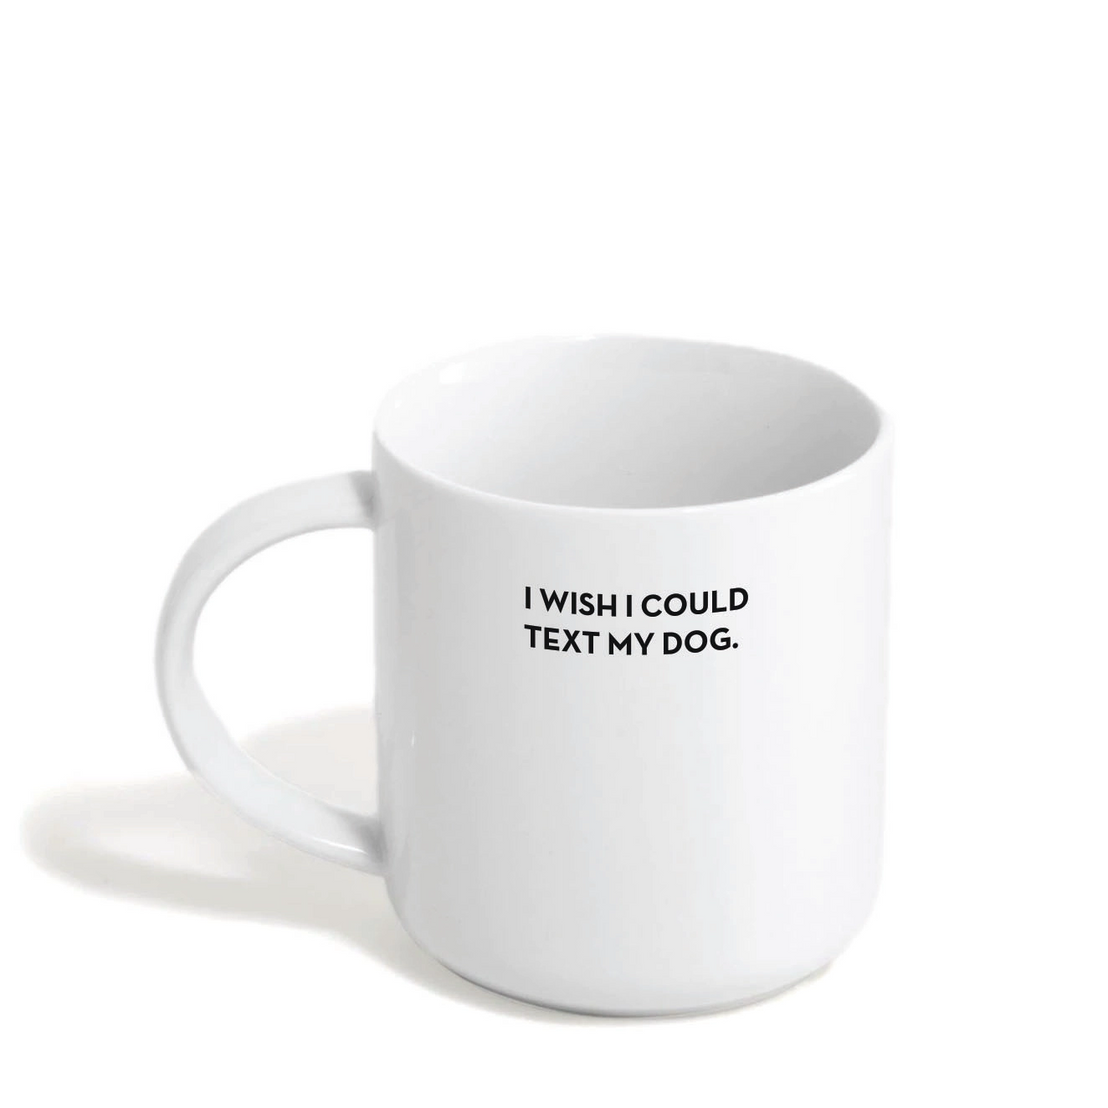 Text My Dog Mug